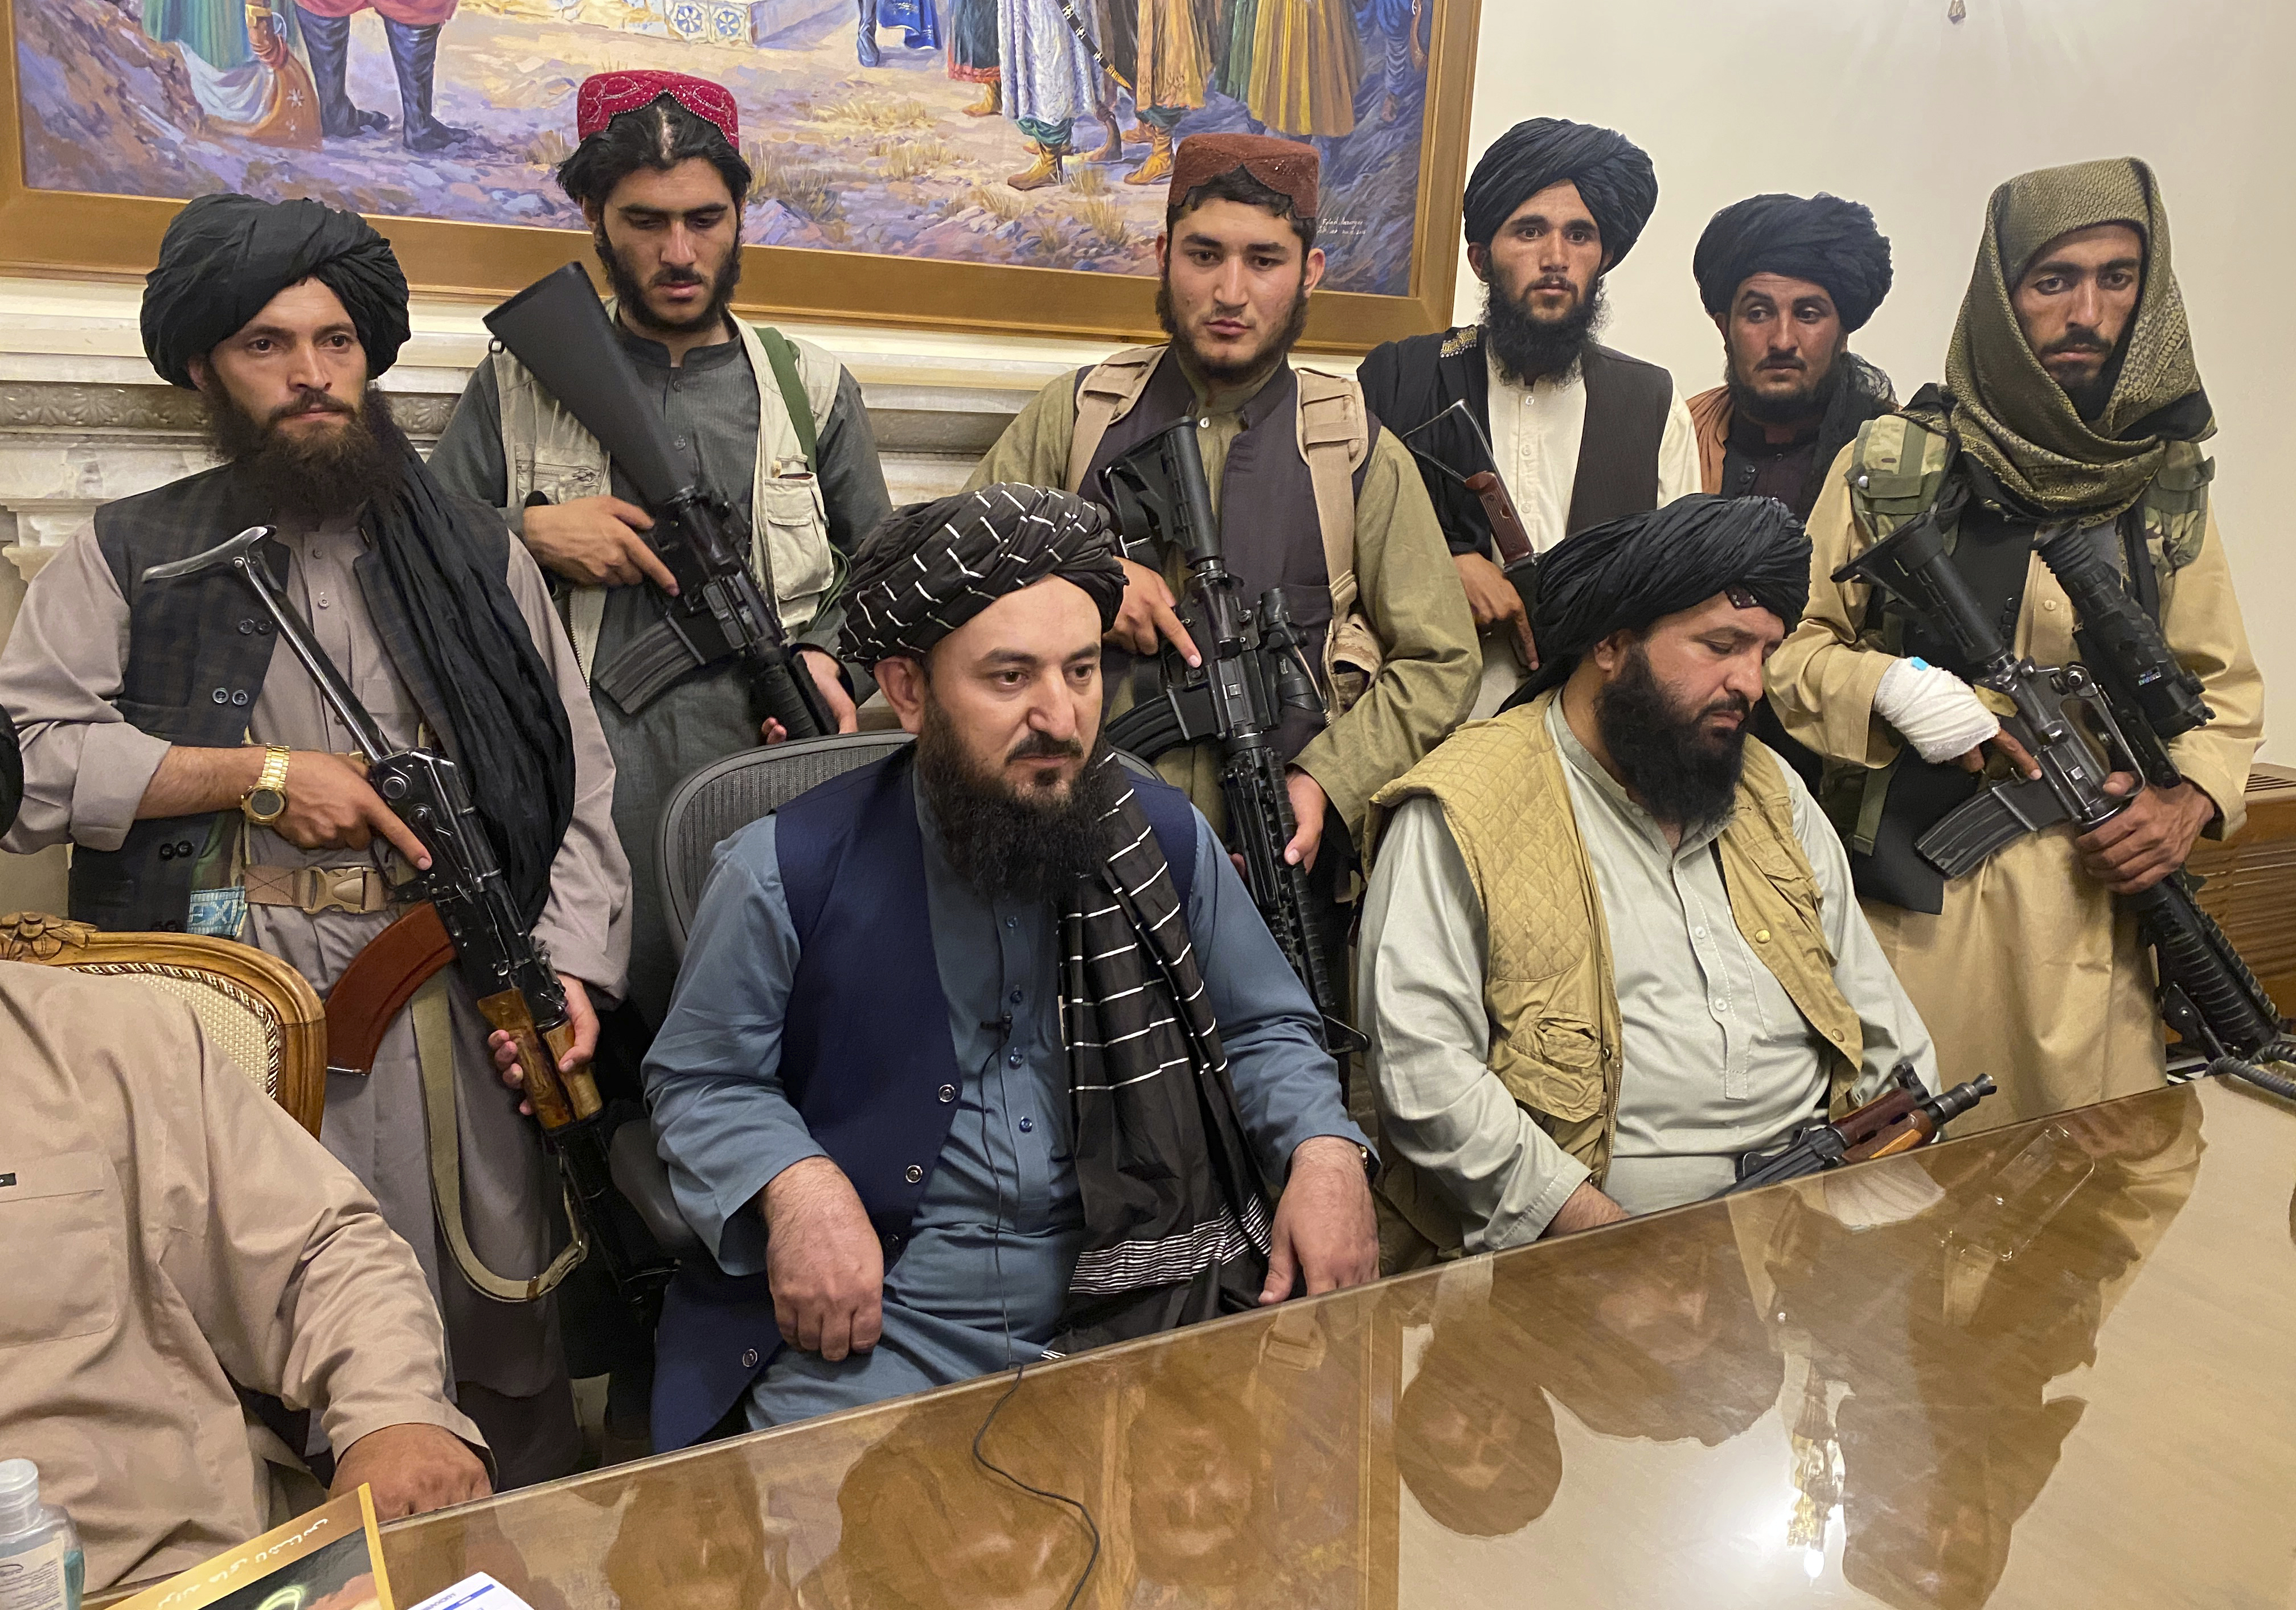 Die Aufnahme zeigt Vertreter der Taleban am 15.08.2021 an einem Tisch sitzend bei einer Pressekonferenz